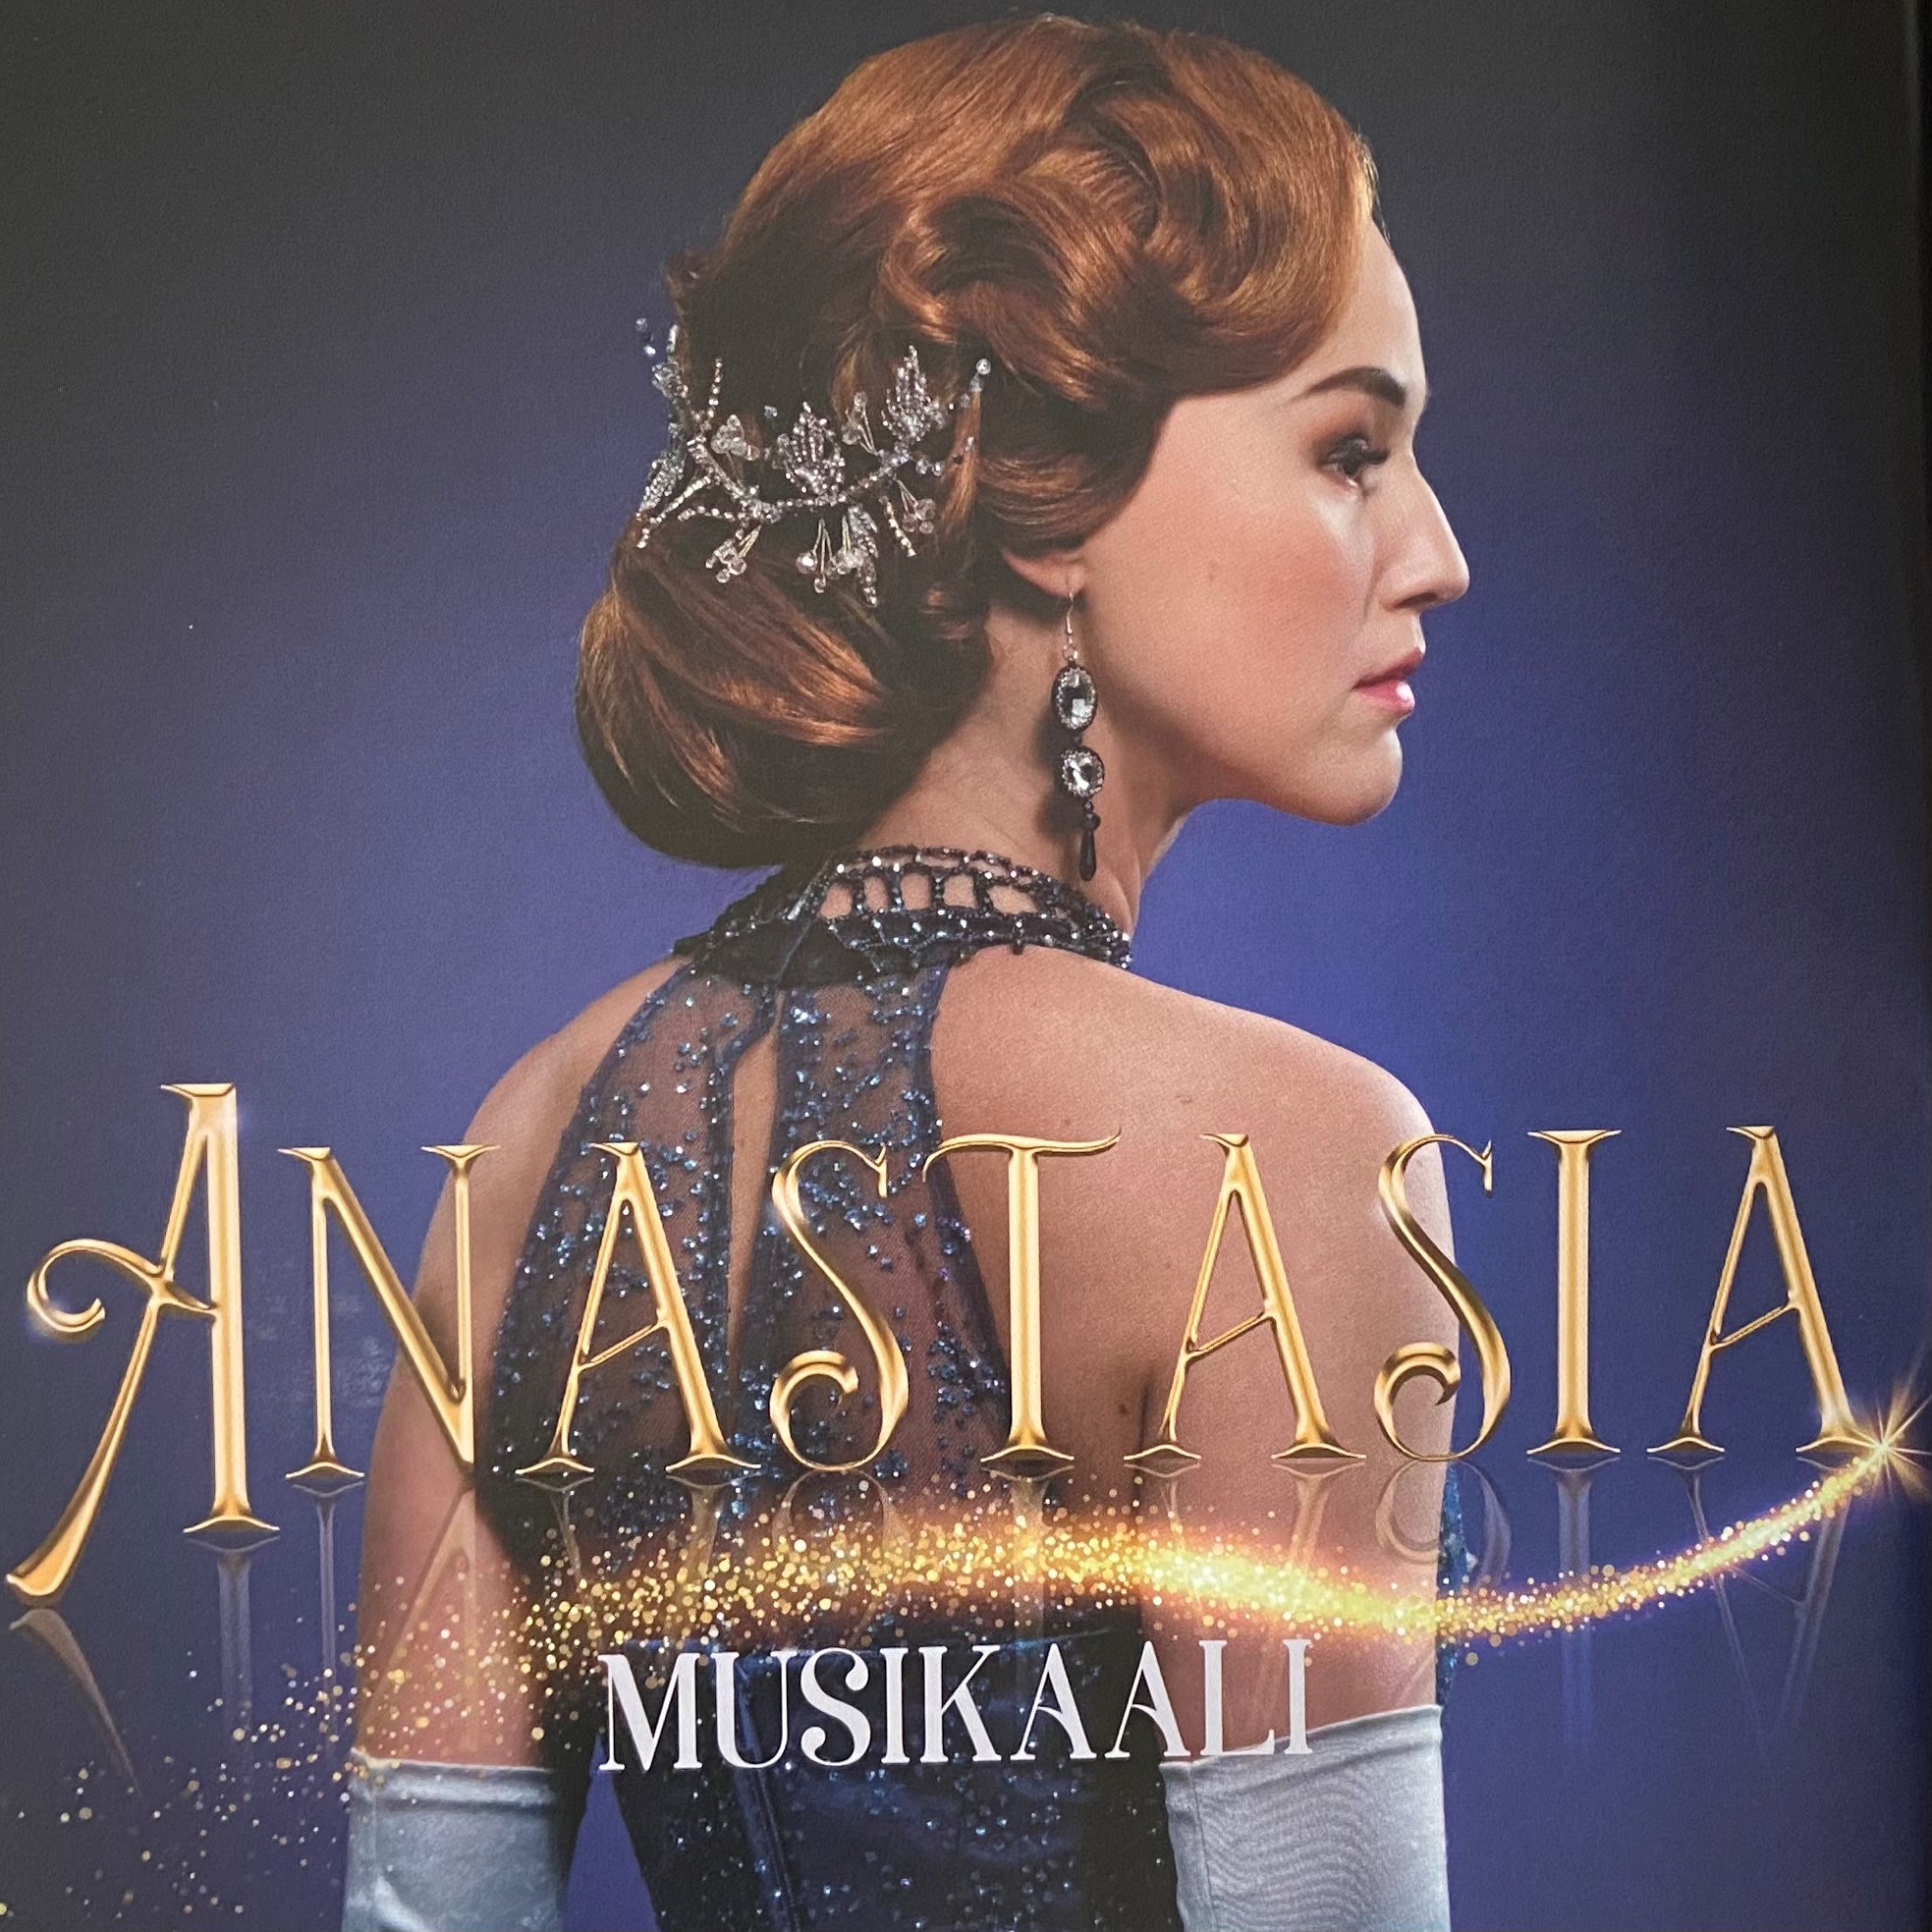 Anastasia-musikaali Tampereen Teatterissa 23.9.2022 - Tehyn Tampereen  kaupungin ao 365 ry